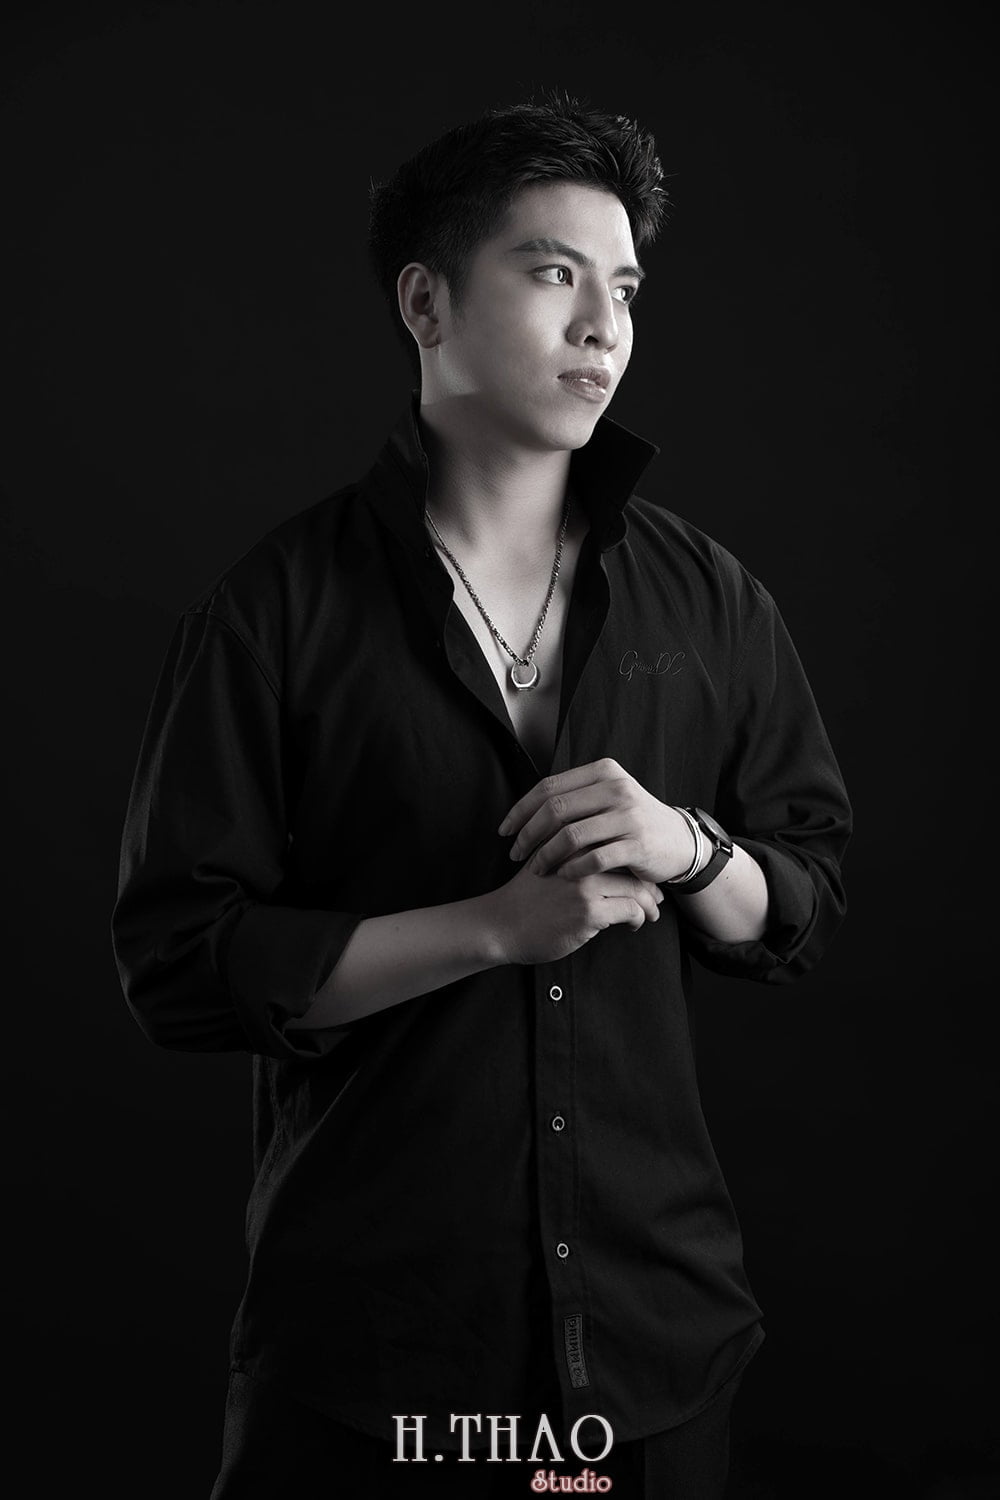 Anh profile style Han Quoc 4 min - Album ảnh profile bạn Dương phong cách hàn quốc - HThao Studio